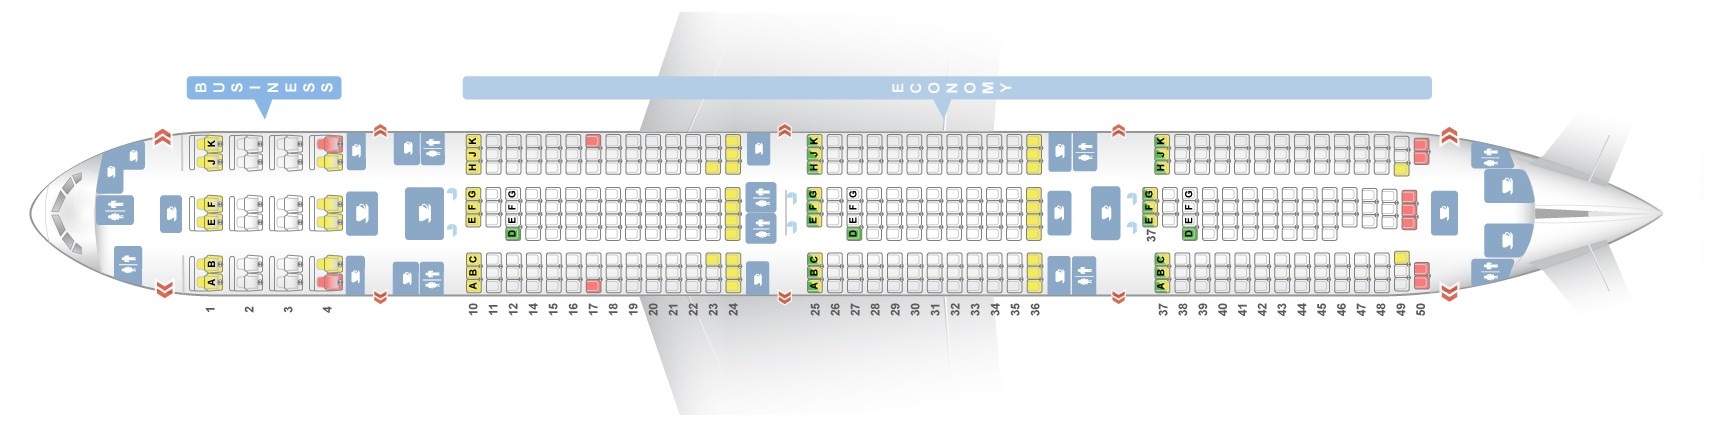 seat assignment qatar airways